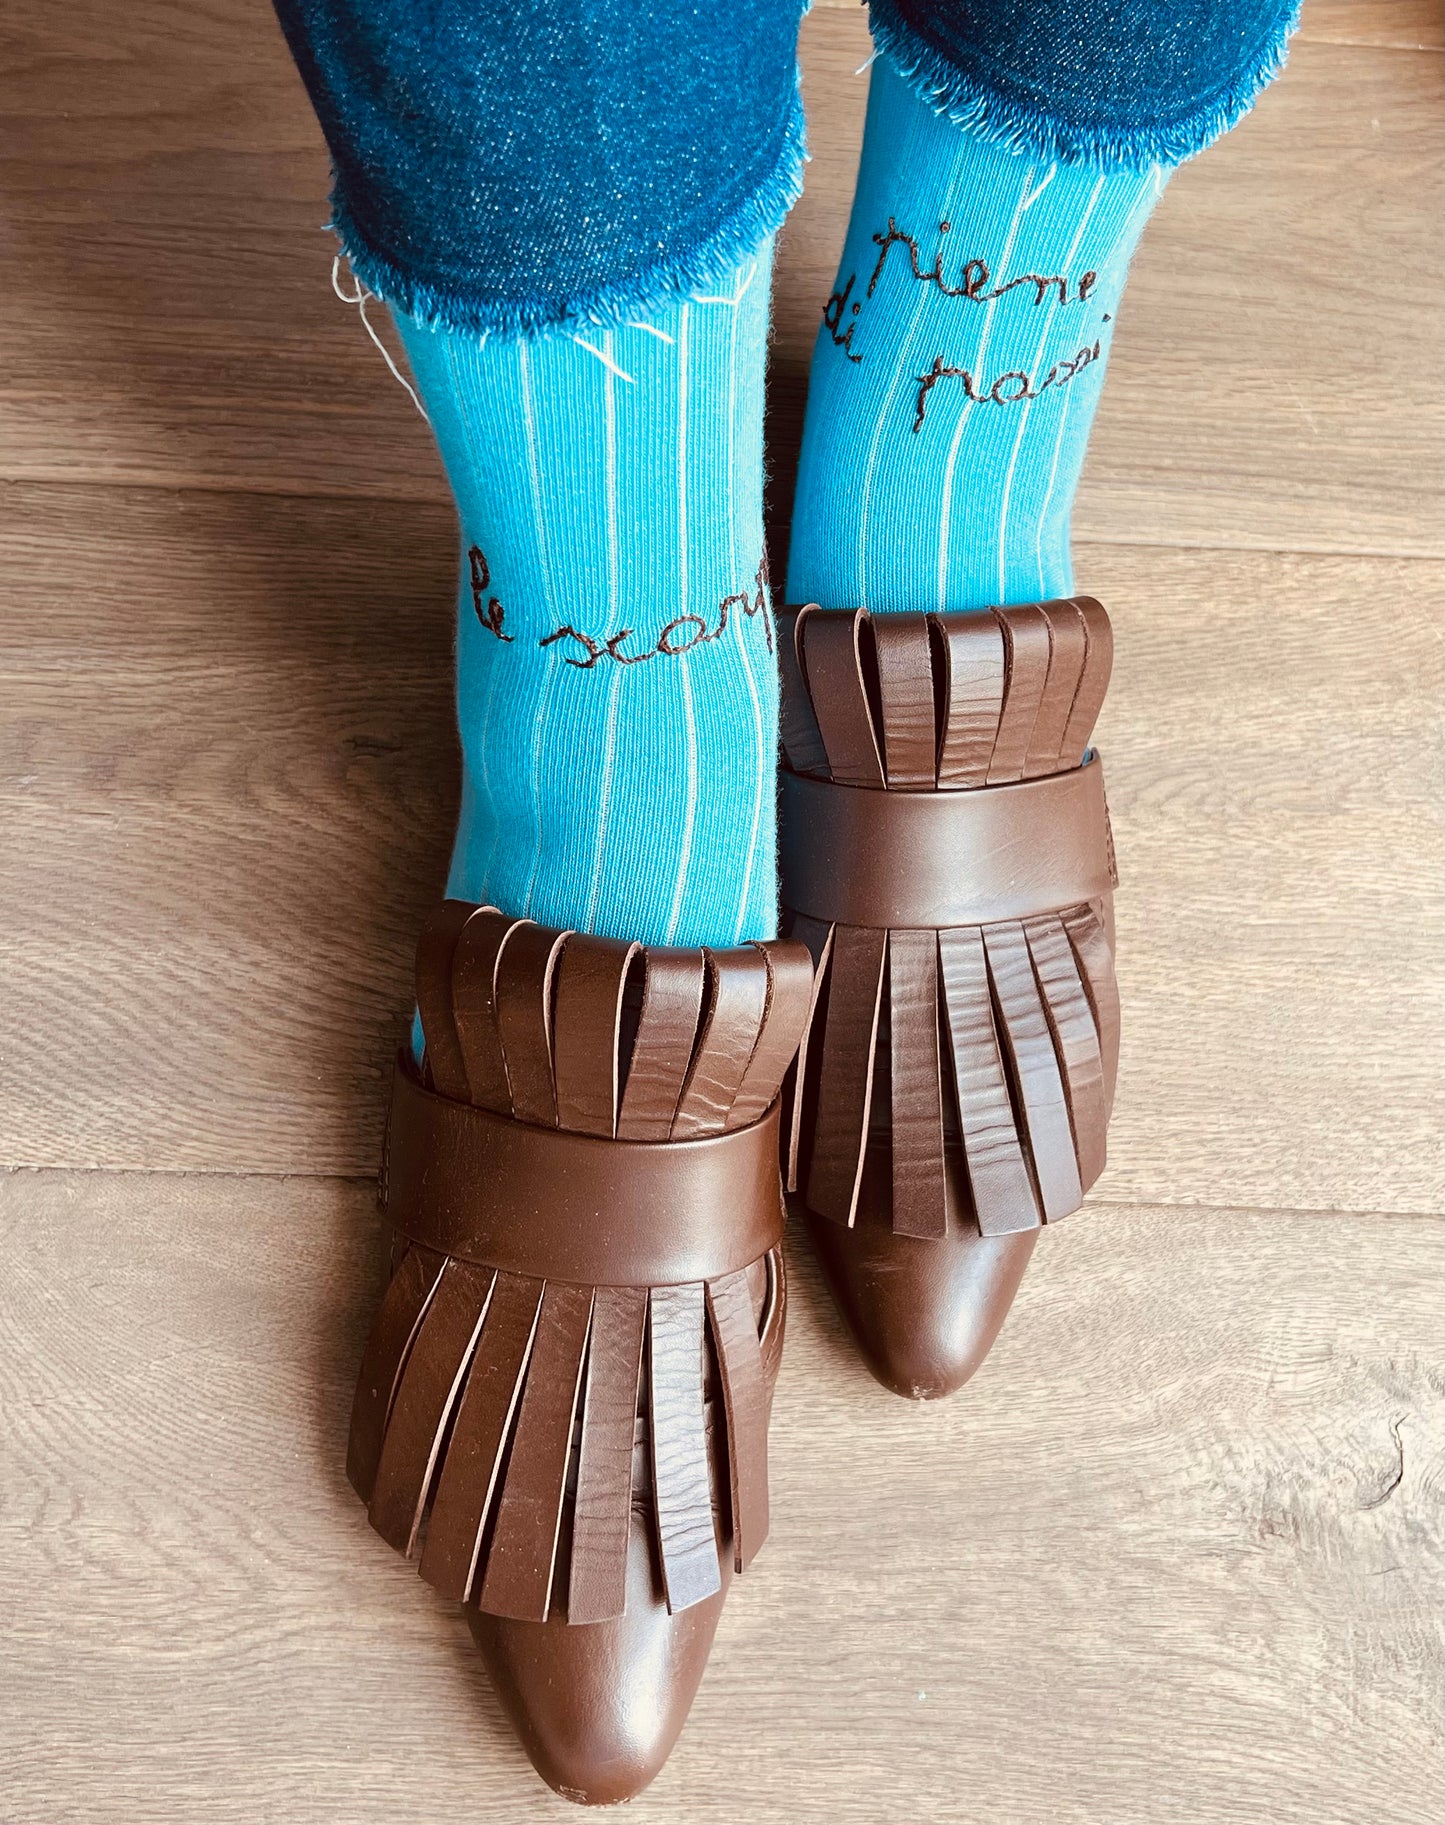 calzini azzurro "le scarpe piene di passi" ricamati a mano